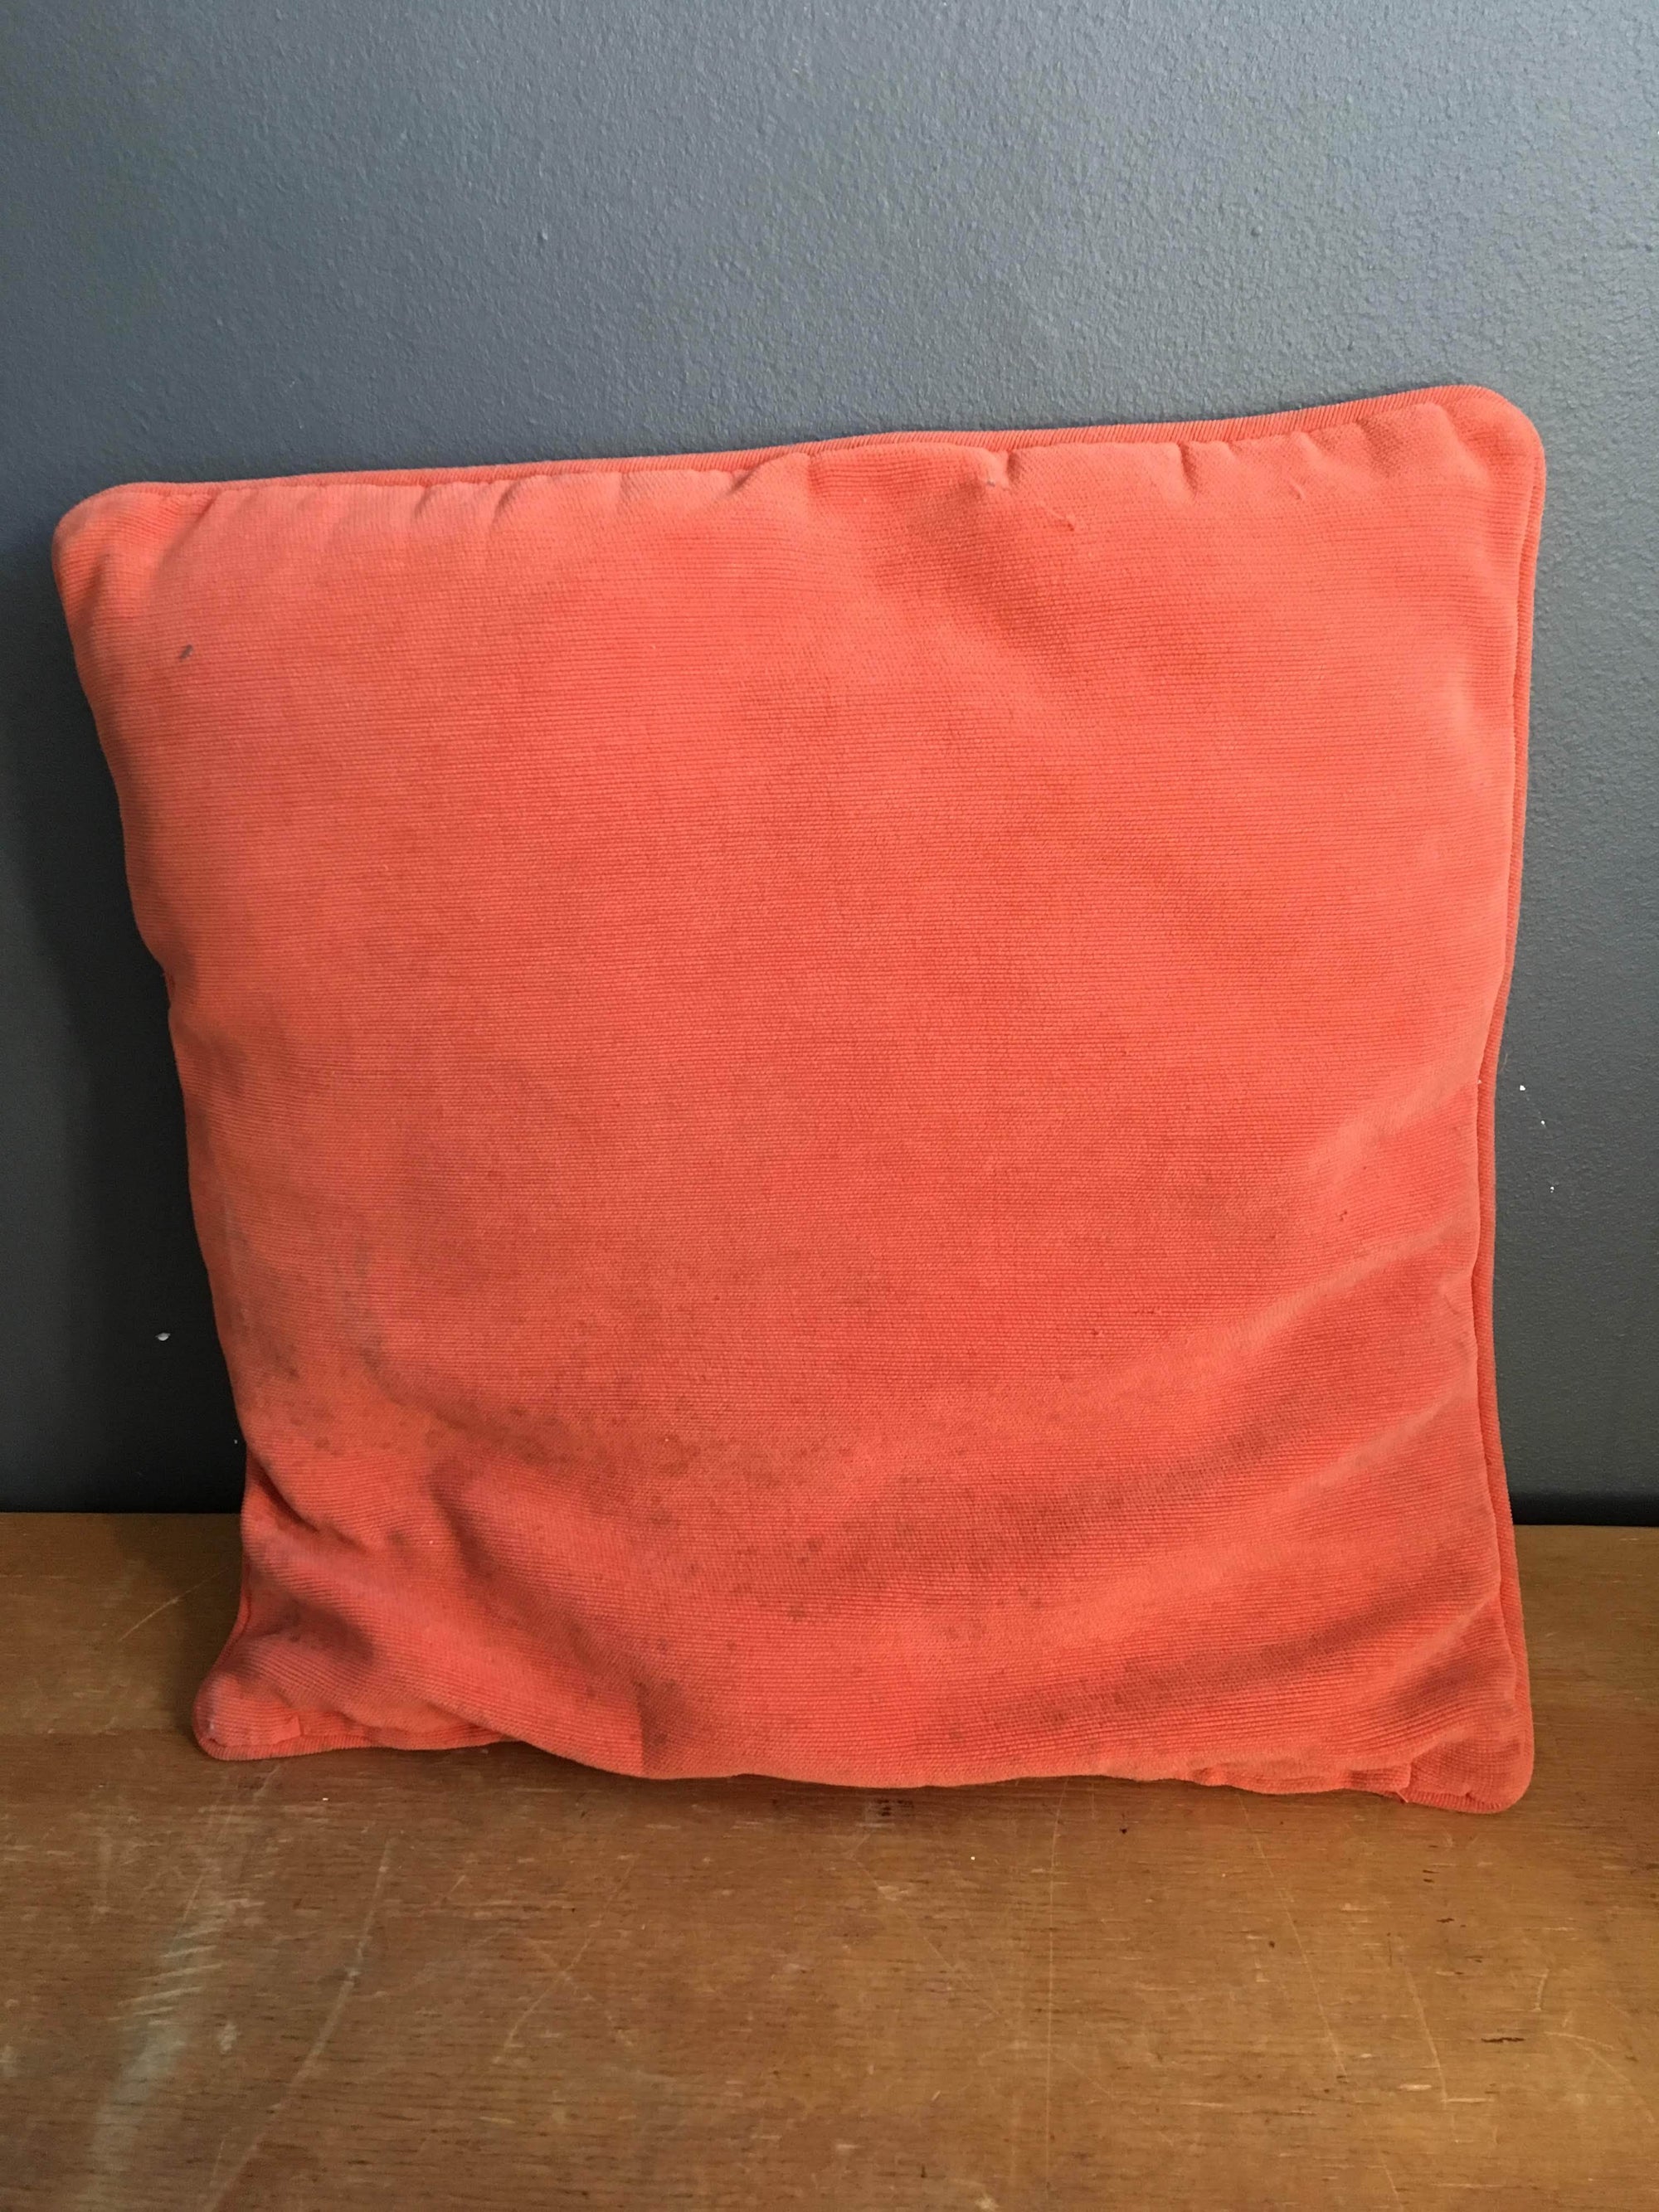 Orange Cushion - 2ndhandwarehouse.com